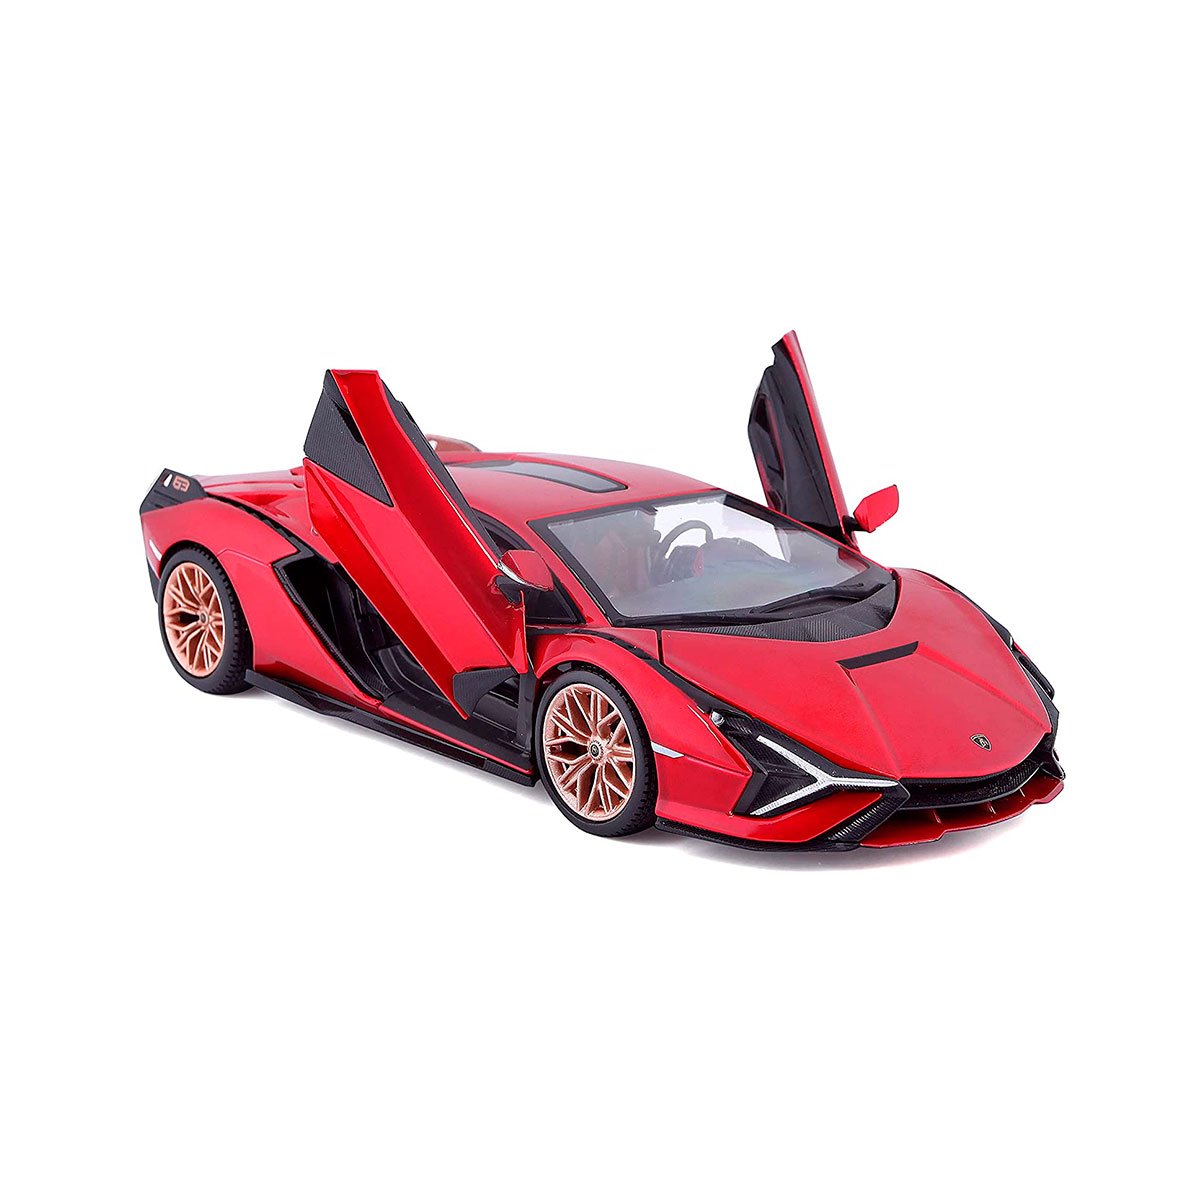 Автомодель Bburago Lamborghini sián fkp 1:24 червоний (18-21099) - фото 2